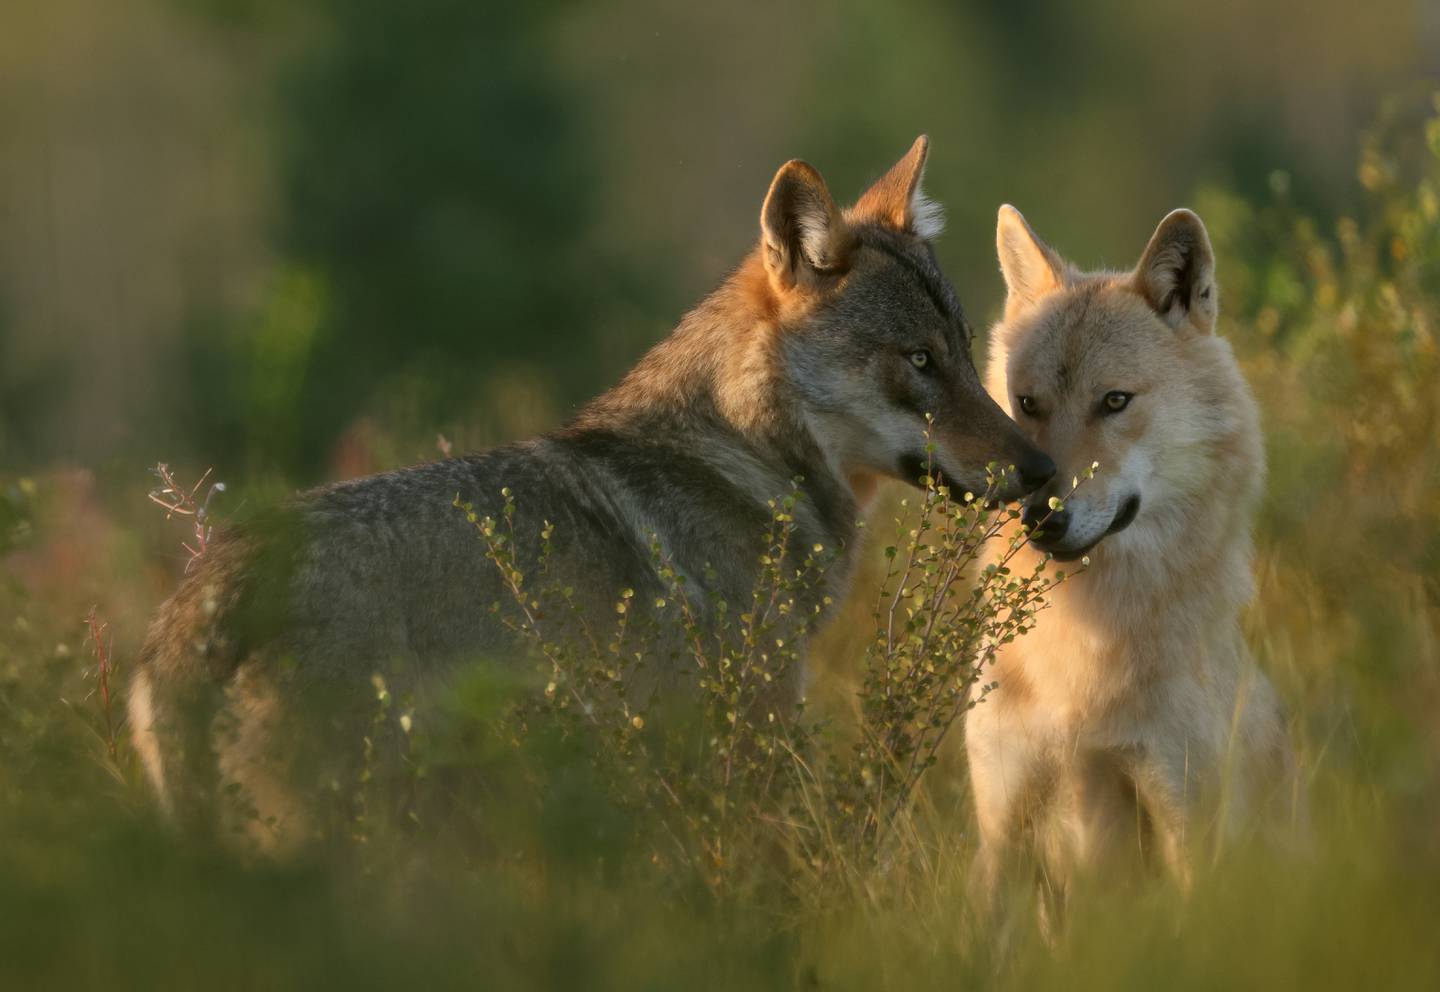 I mange land i Europa har ulven kommet tilbake. Danmark fikk i sommer retningslinjer for ulveturisme. En av anbefalingene er å klappe i hendene og skremme ulven vekk med rop og fakter hvis den kommer nærmere enn 30 meter.